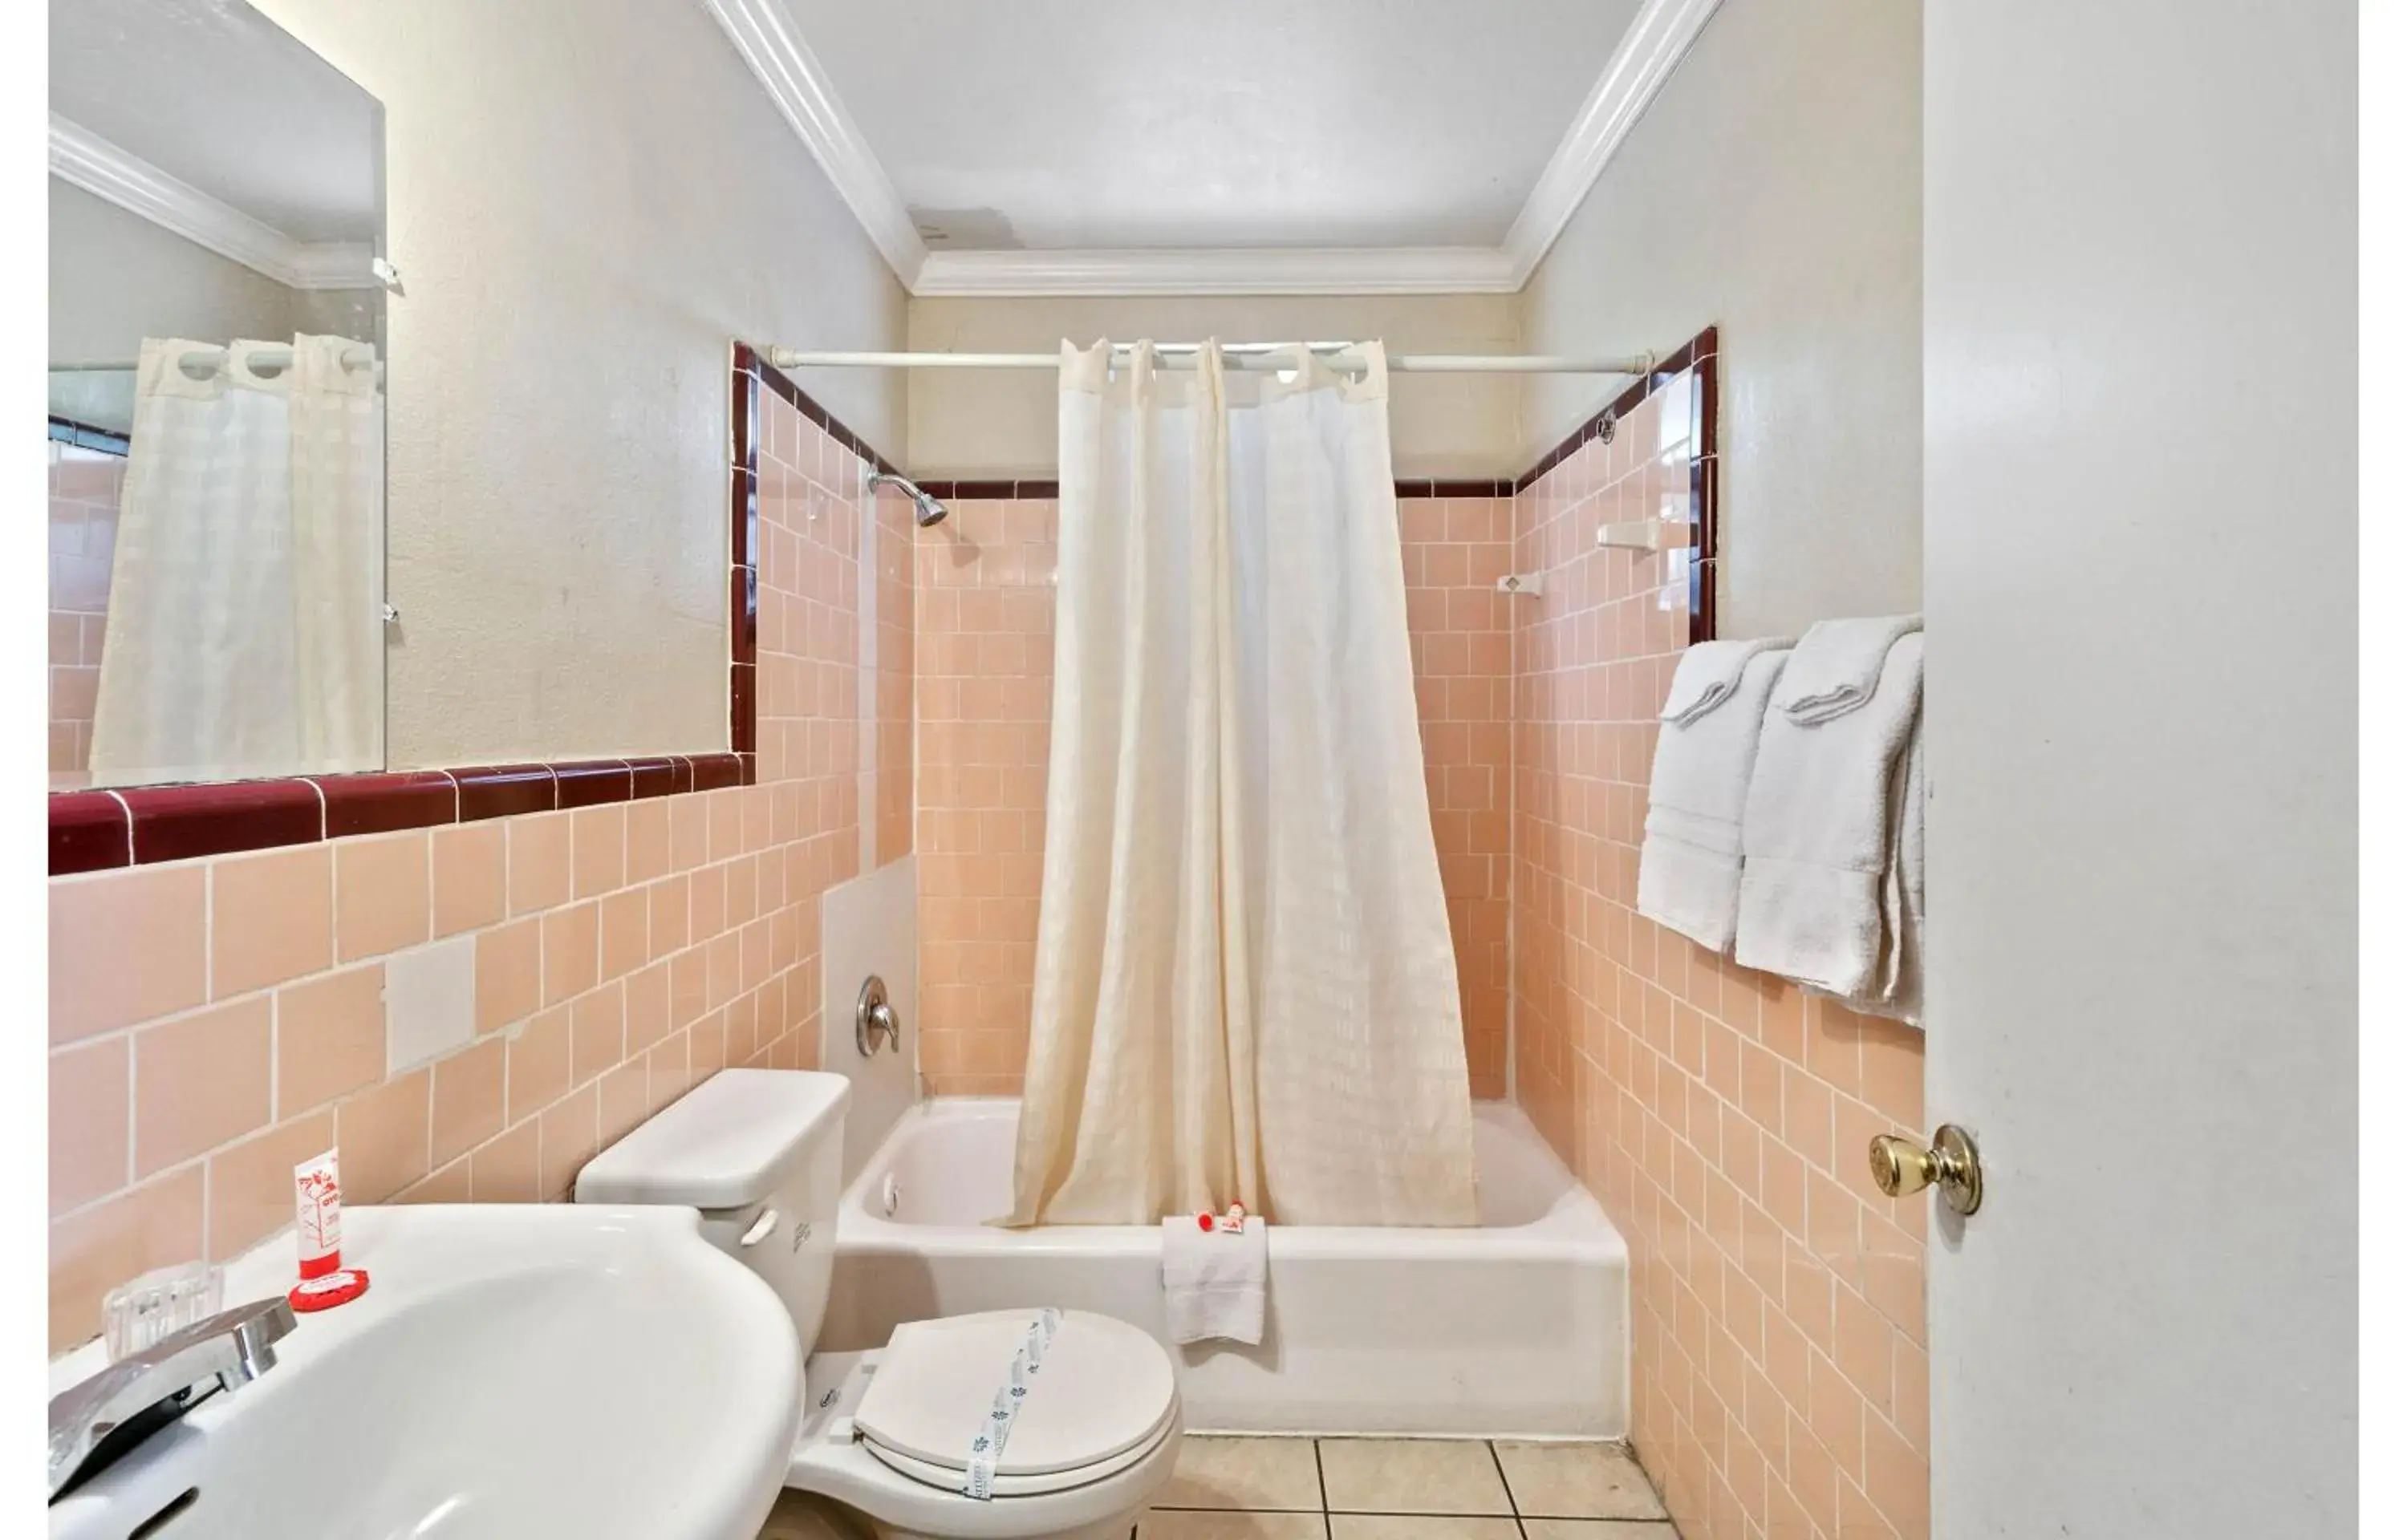 Bathroom in OYO Hotel Beeville - US 181